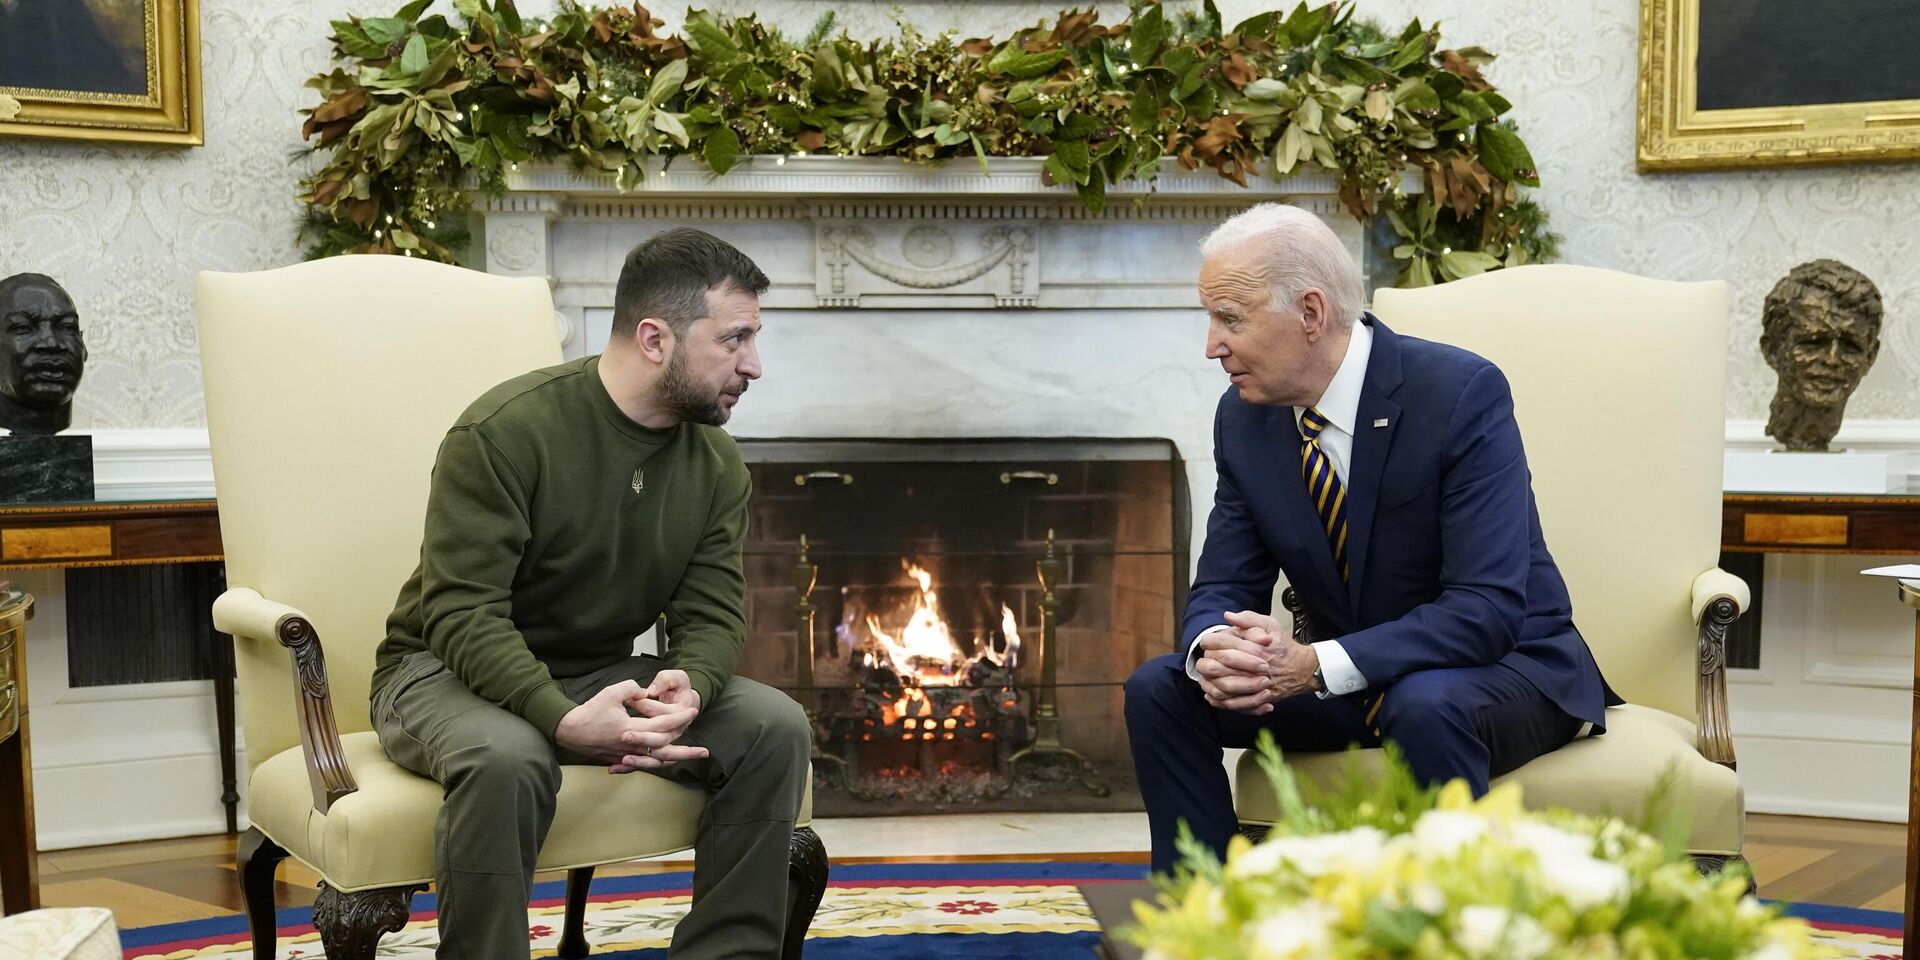 Президент США Джо Байден и президент Украины Владимир Зеленский во время встречи в Белом доме в Вашингтоне. 21 декабря 2022 года - ИноСМИ, 1920, 24.12.2022